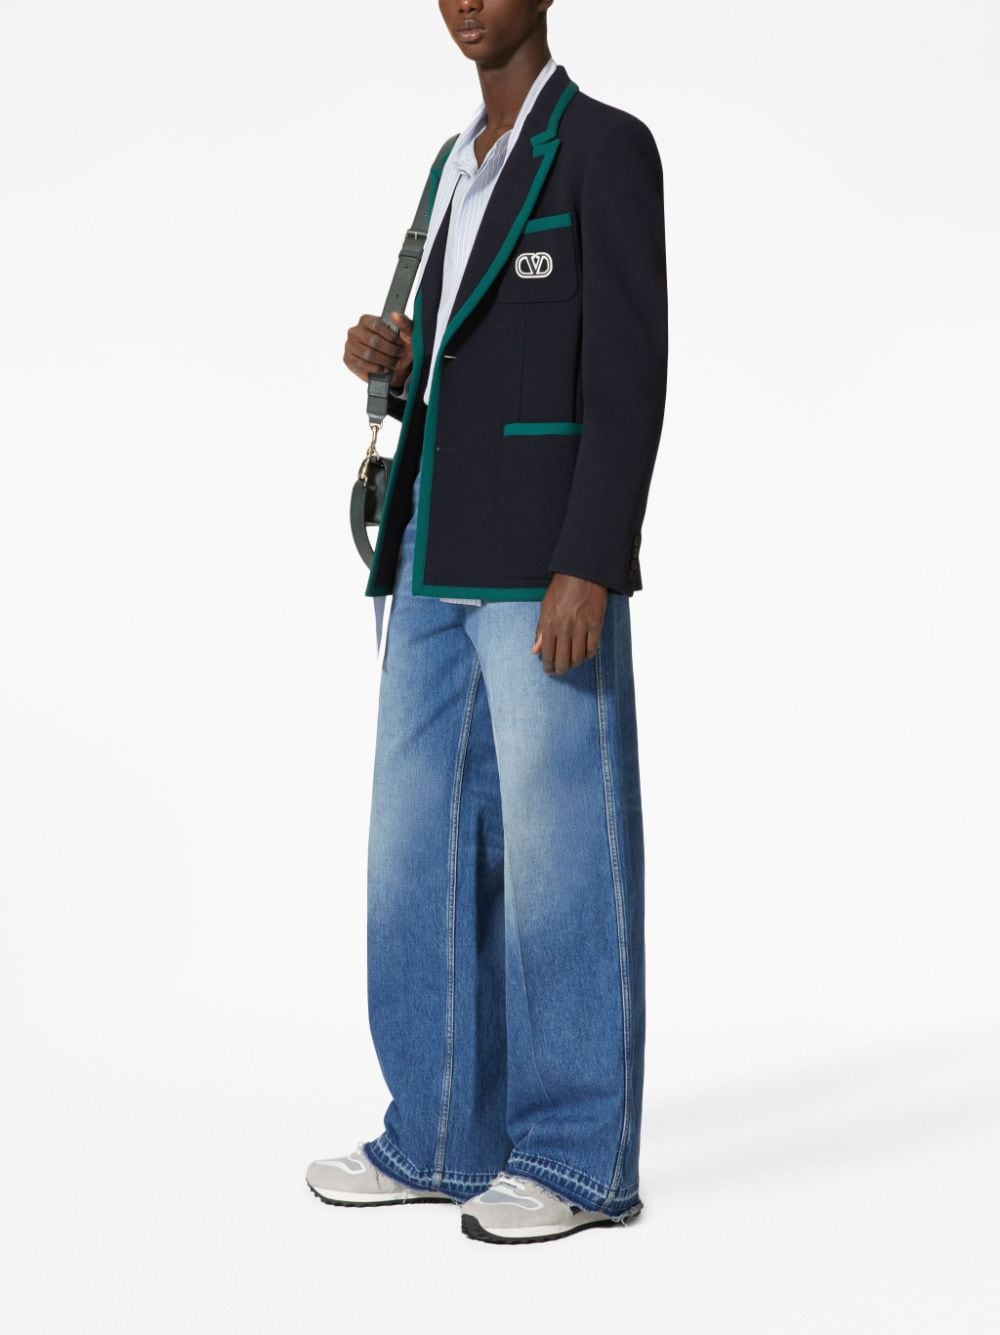 男士羊毛配襯對比袖扣單排扣藍色西裝外套FW23